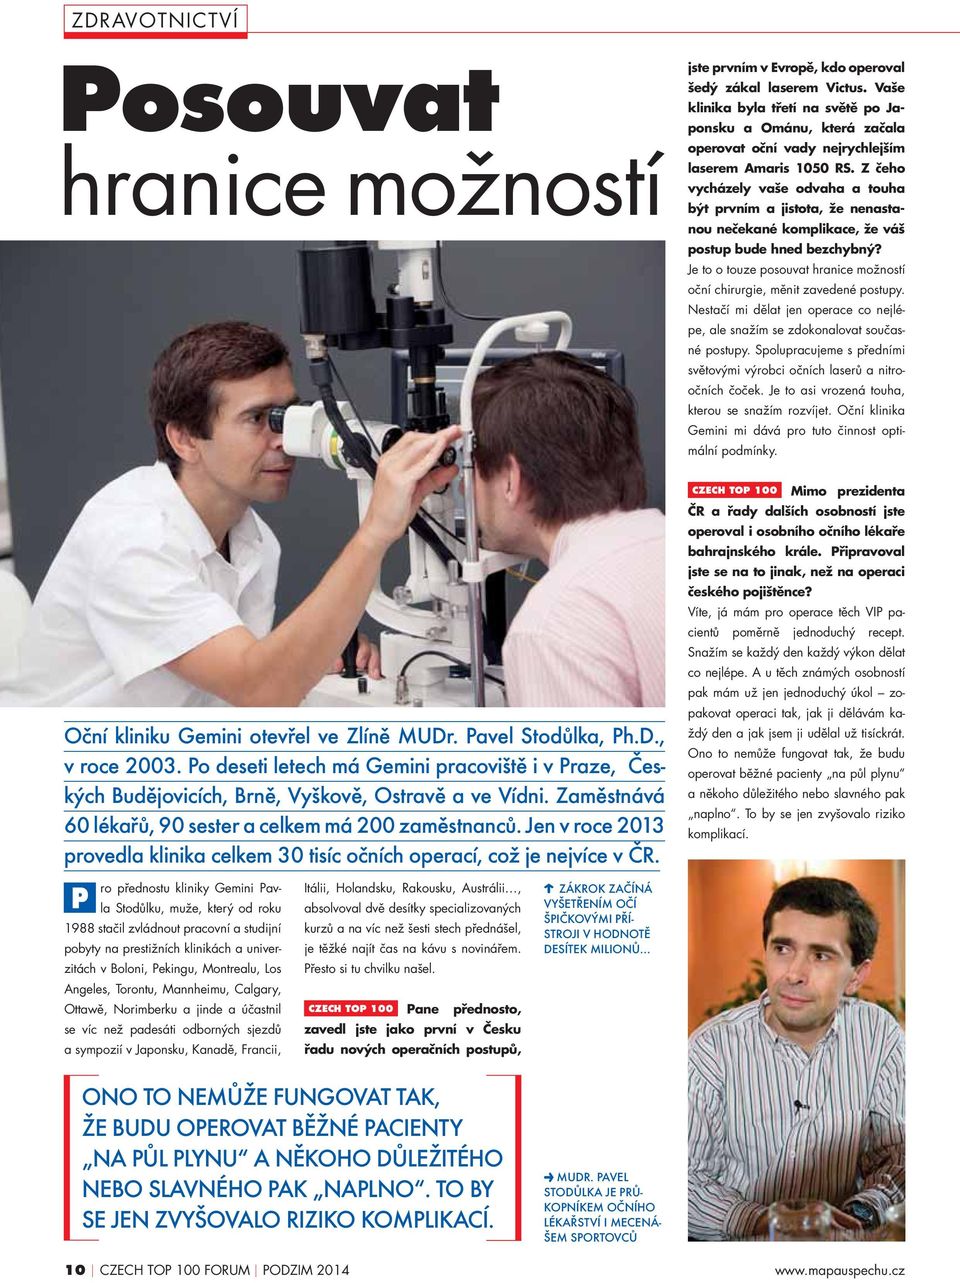 Jen v roce 2013 provedla klinika celkem 30 tisíc očních operací, což je nejvíce v ČR.